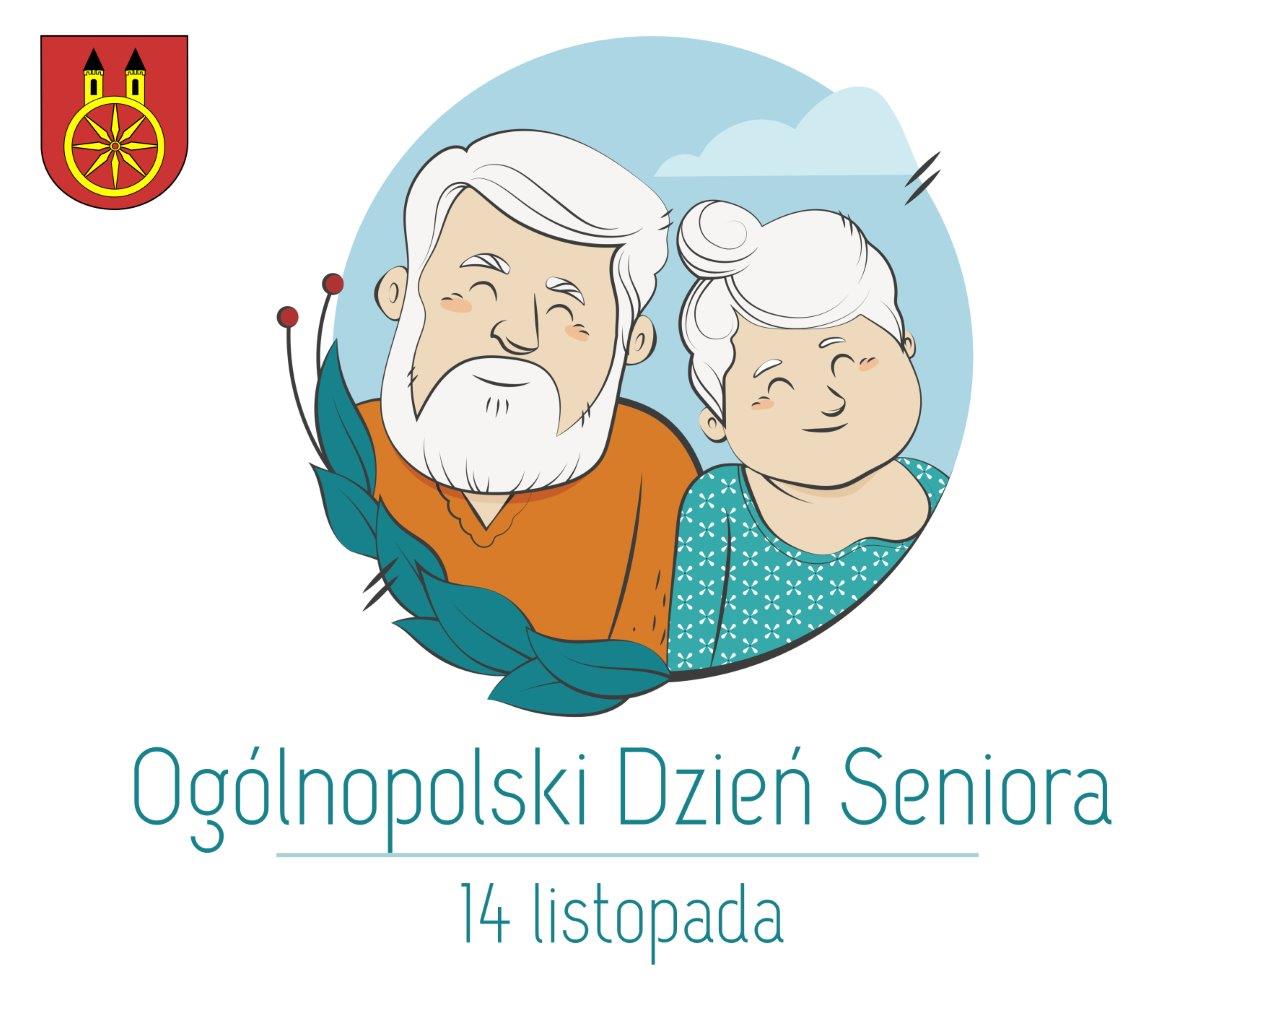 Plansza 14 listopada Ogólnopolski Dzień Seniora, tekst pod planszą.